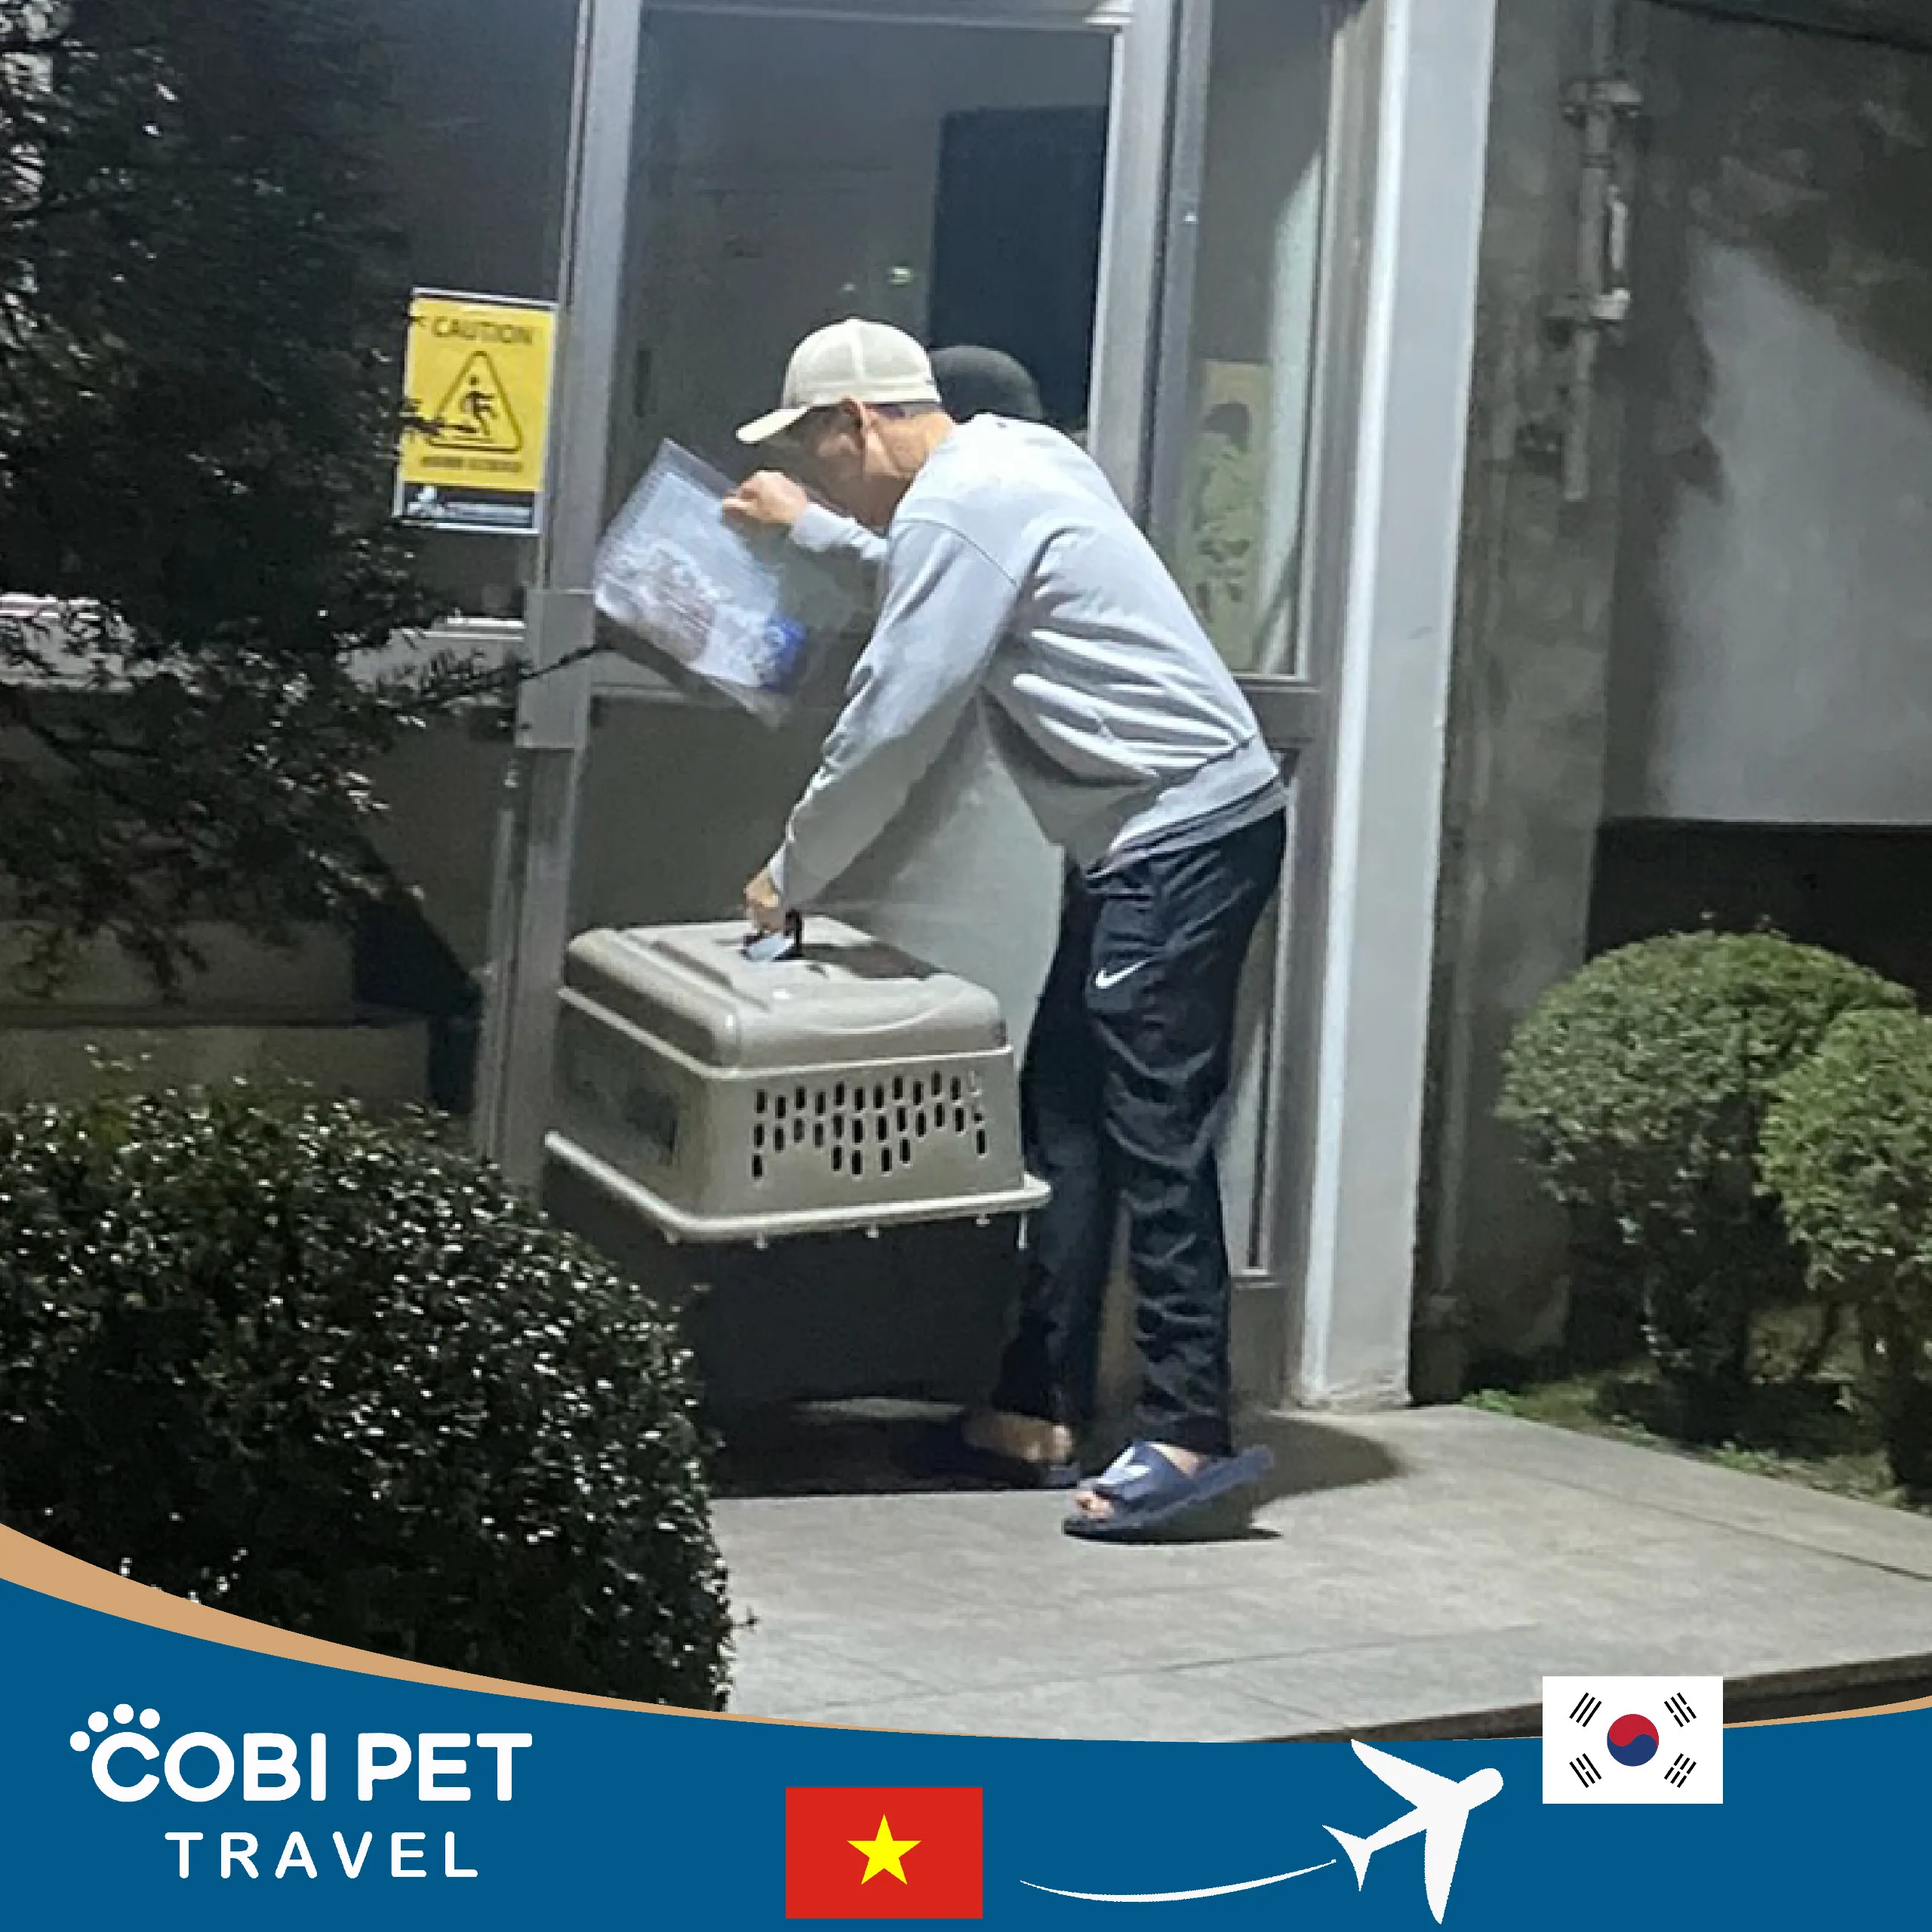 Cobi Pet Travel hỗ trợ đưa Taenggu về nhà